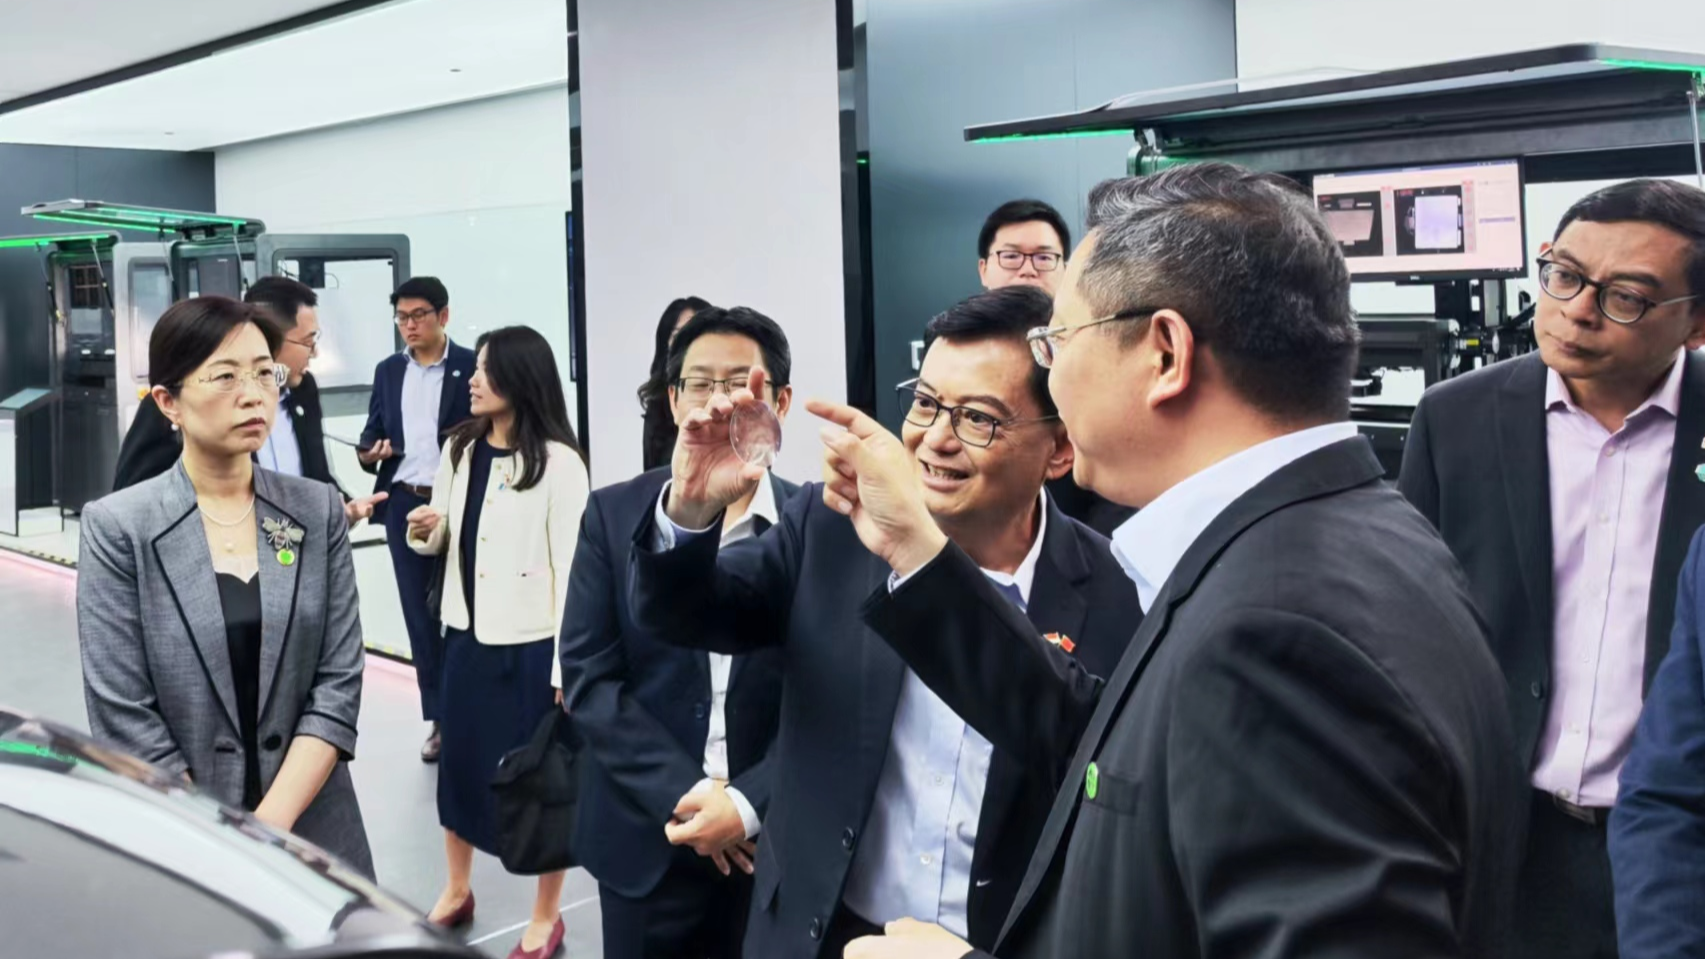 新加坡副总理兼经济政策统筹部长王瑞杰访问深圳：“深圳具备蓬勃发展的创新生态系统”